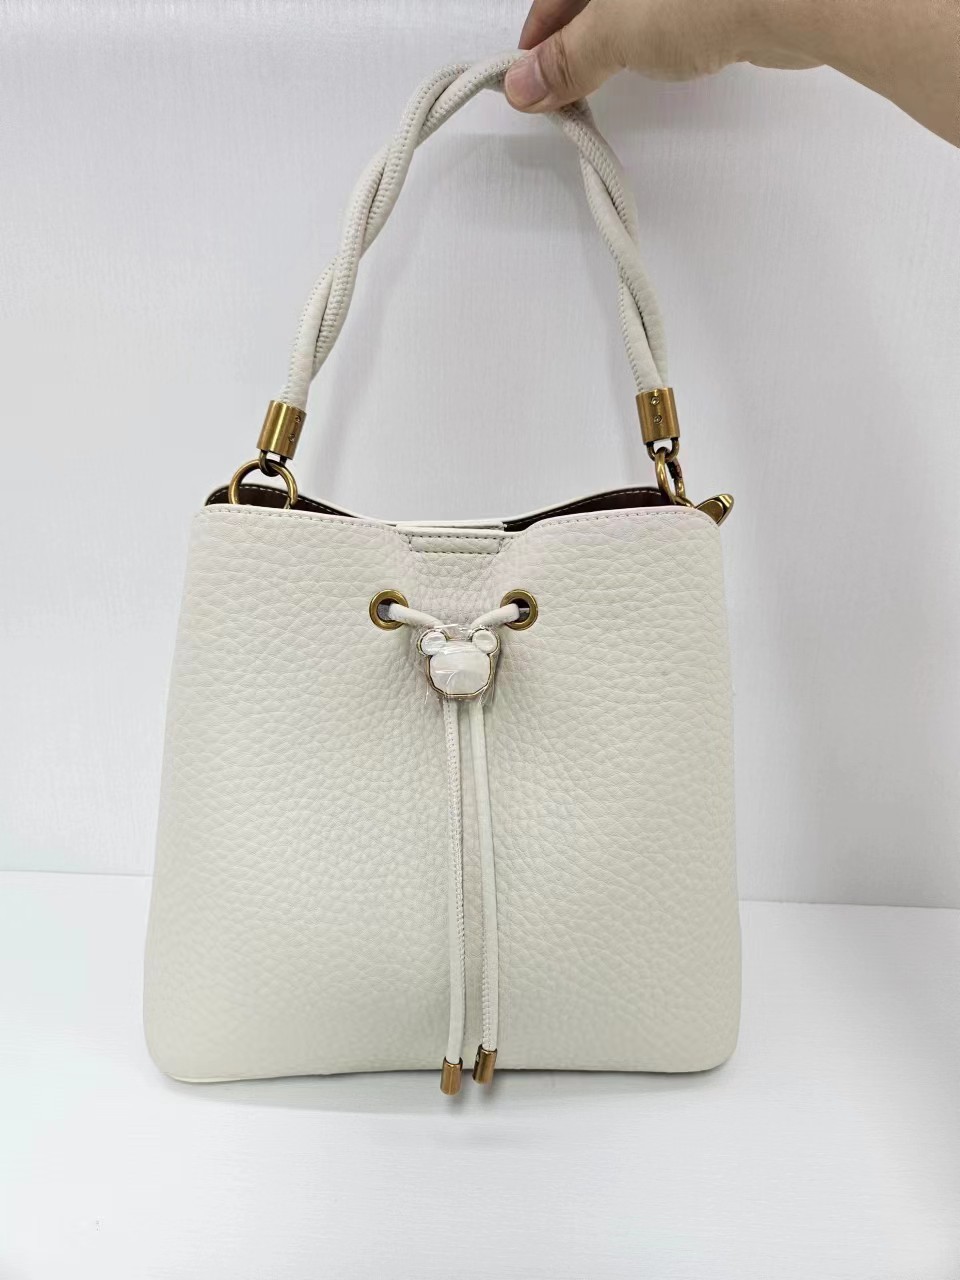 gucci sling handbag